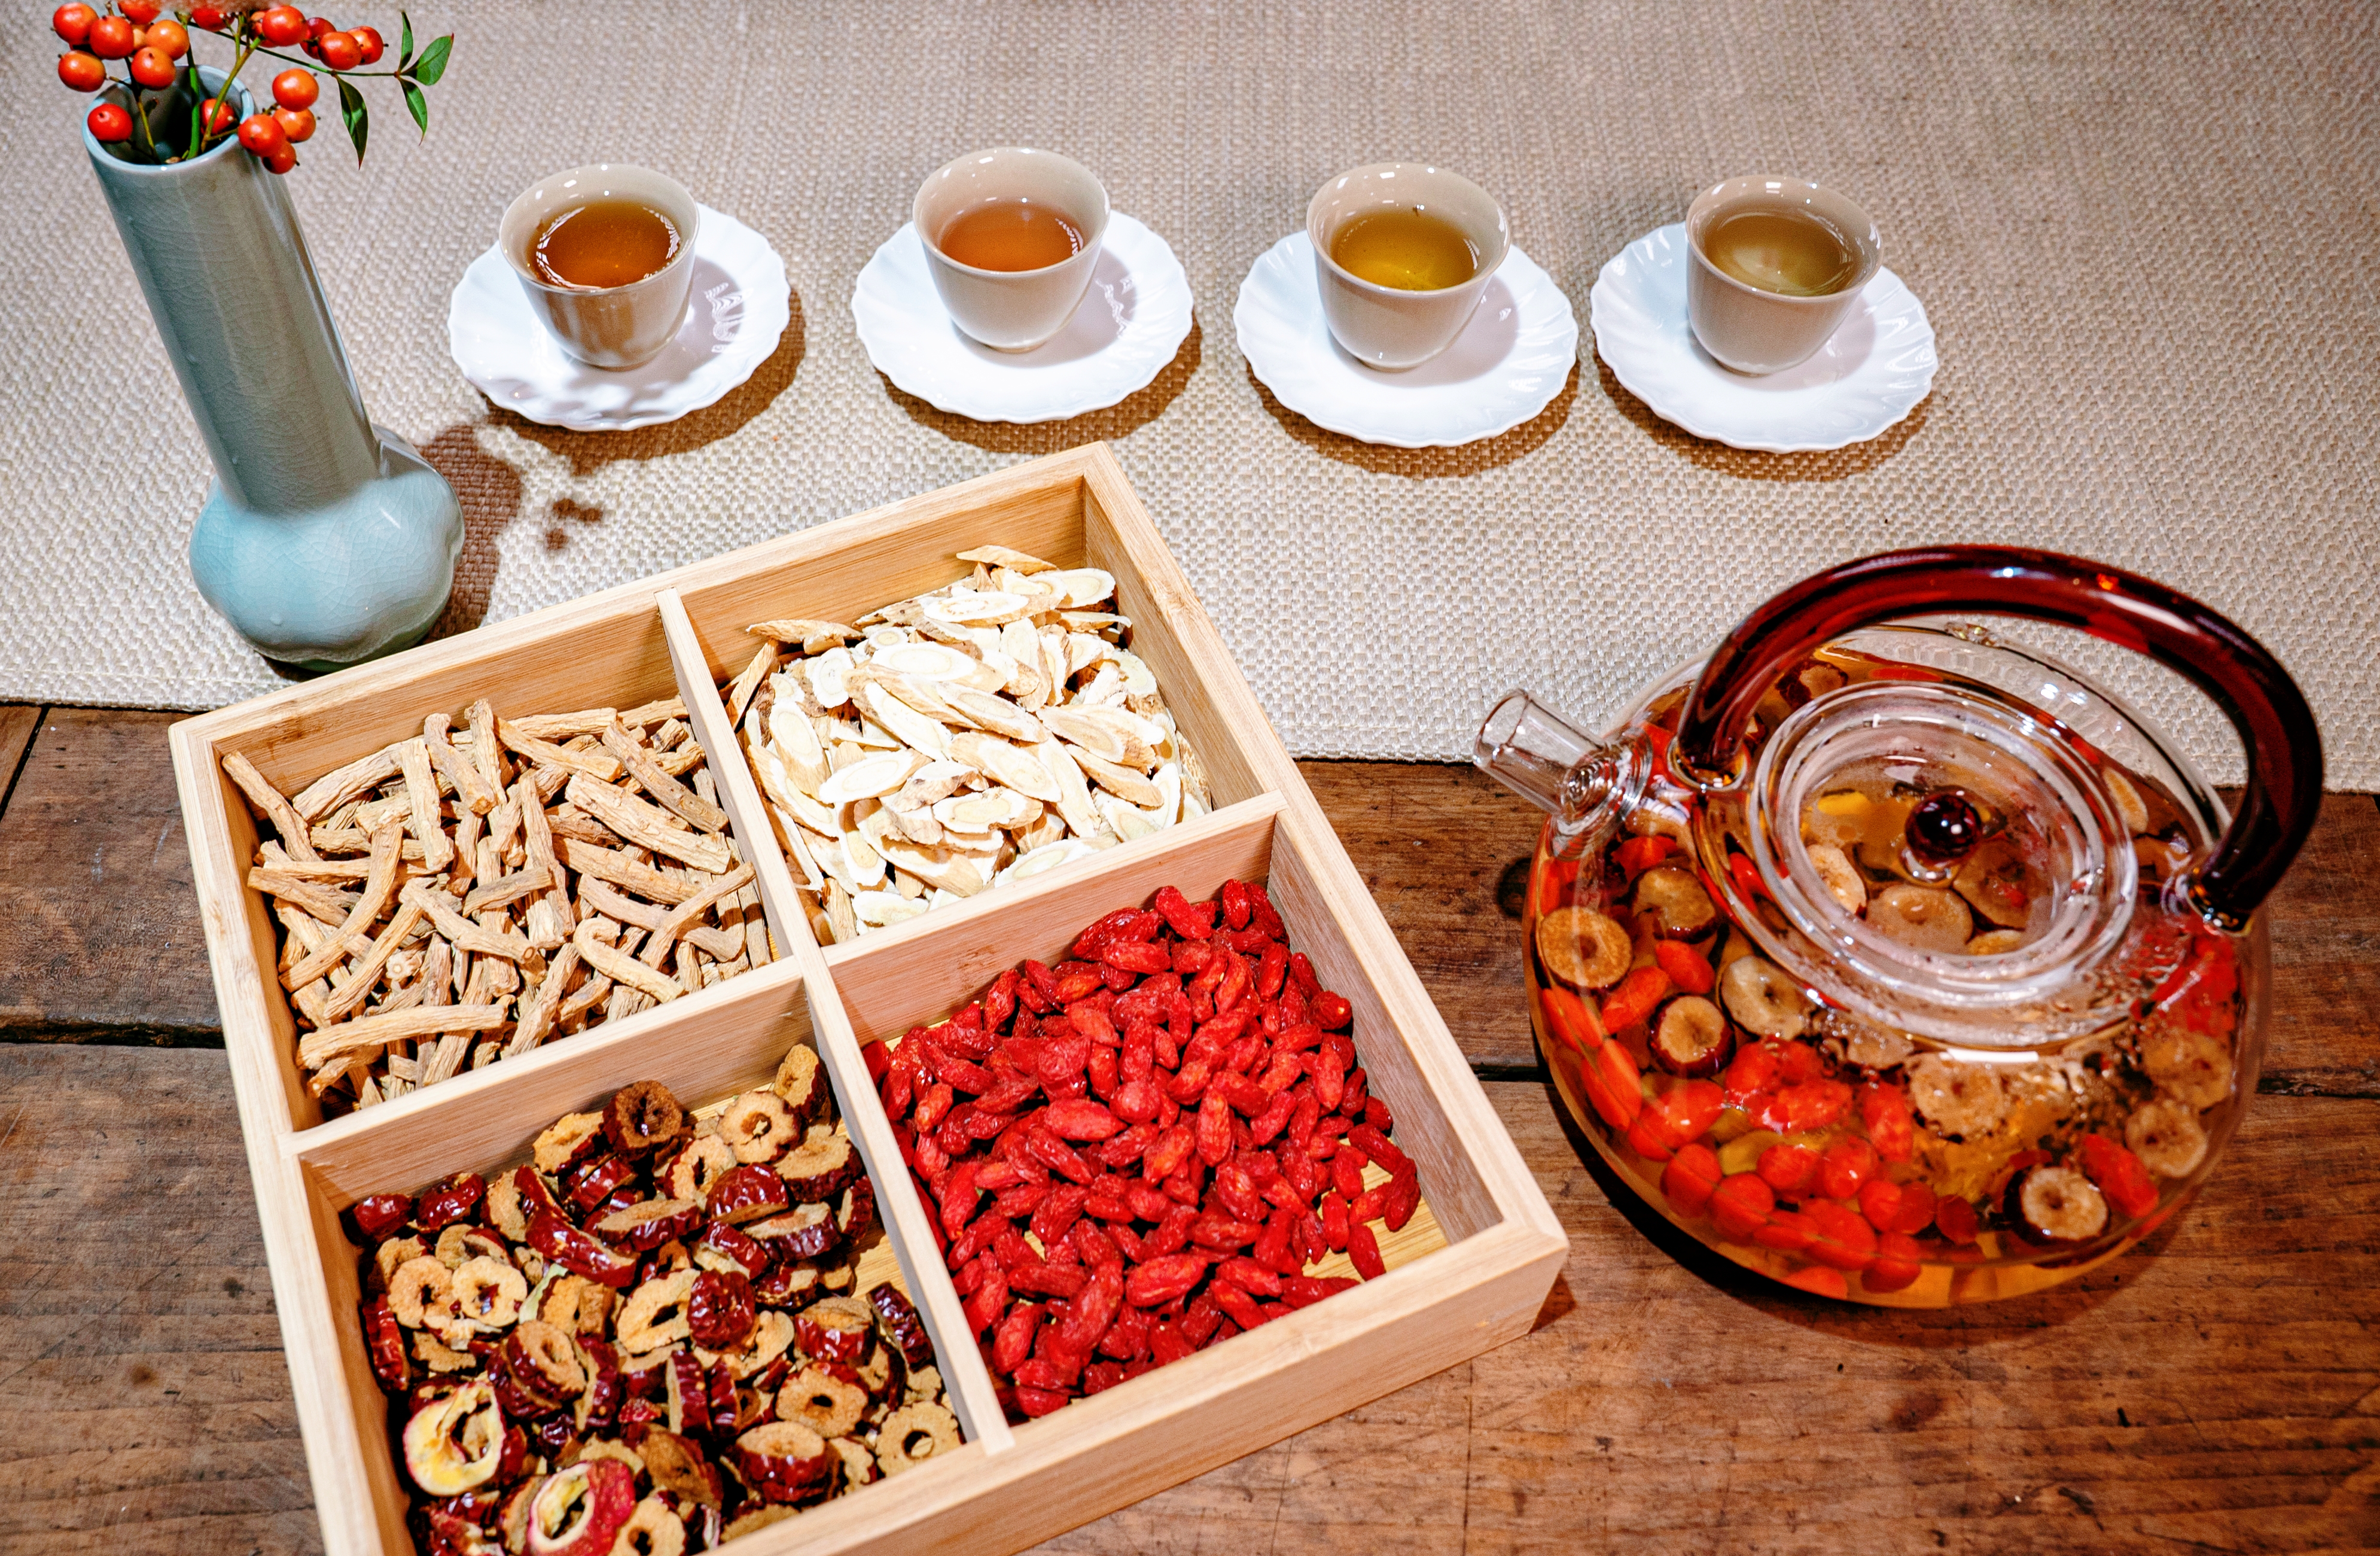 оздоровительный чай целебных трав китайской медицины с долгой историей